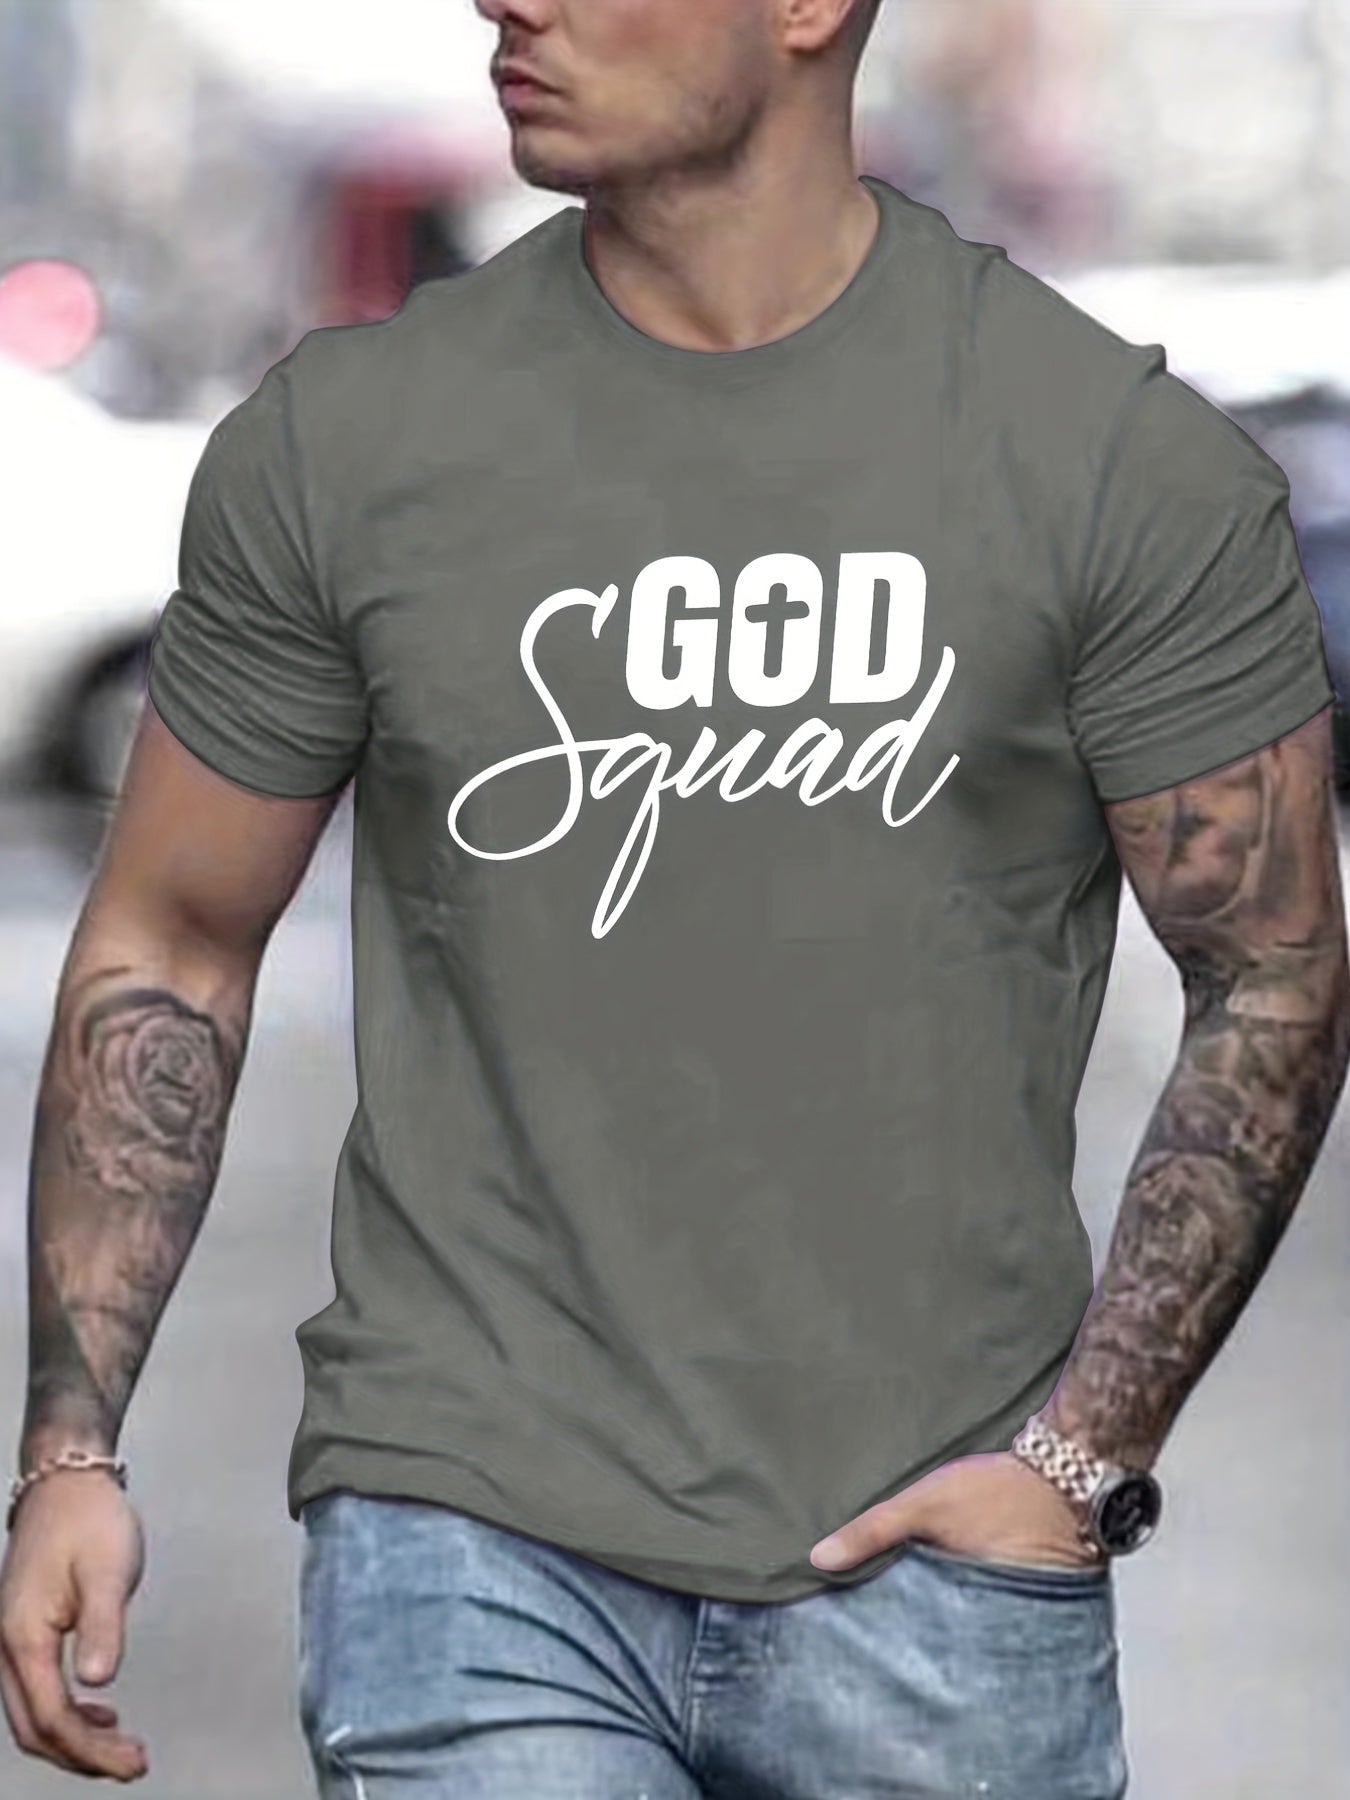 'God Squad Men's Christian T-shirt claimedbygoddesigns